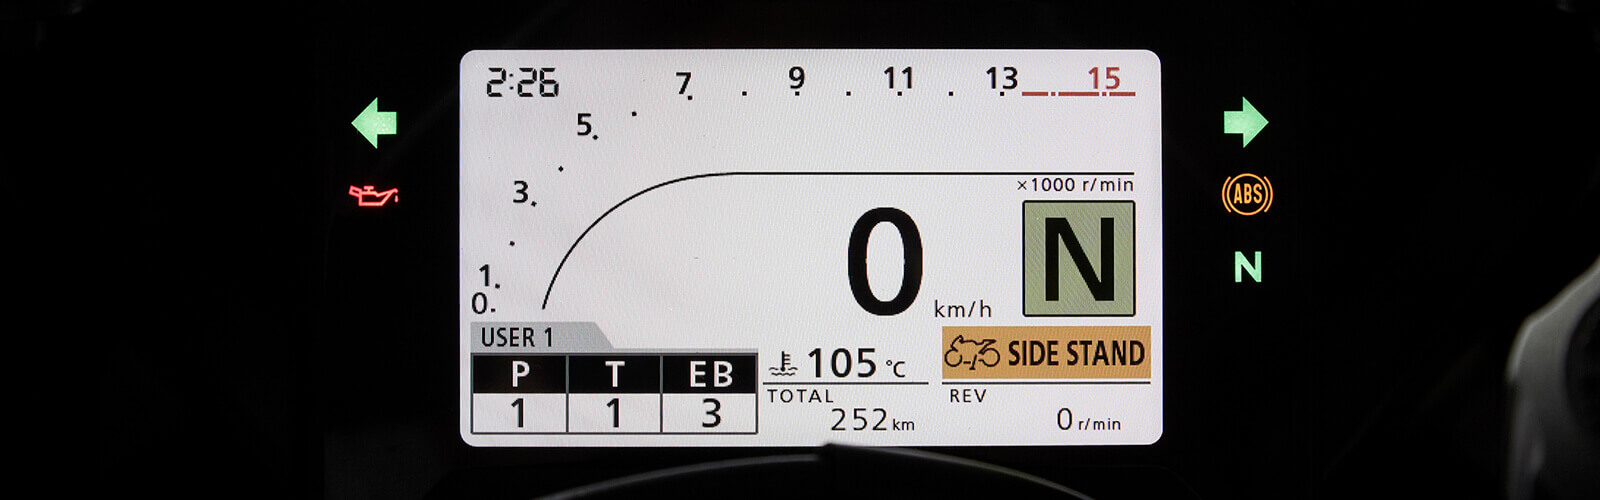 Selector de potencia a través de la pantalla TFT con la CBR 1000 SP1